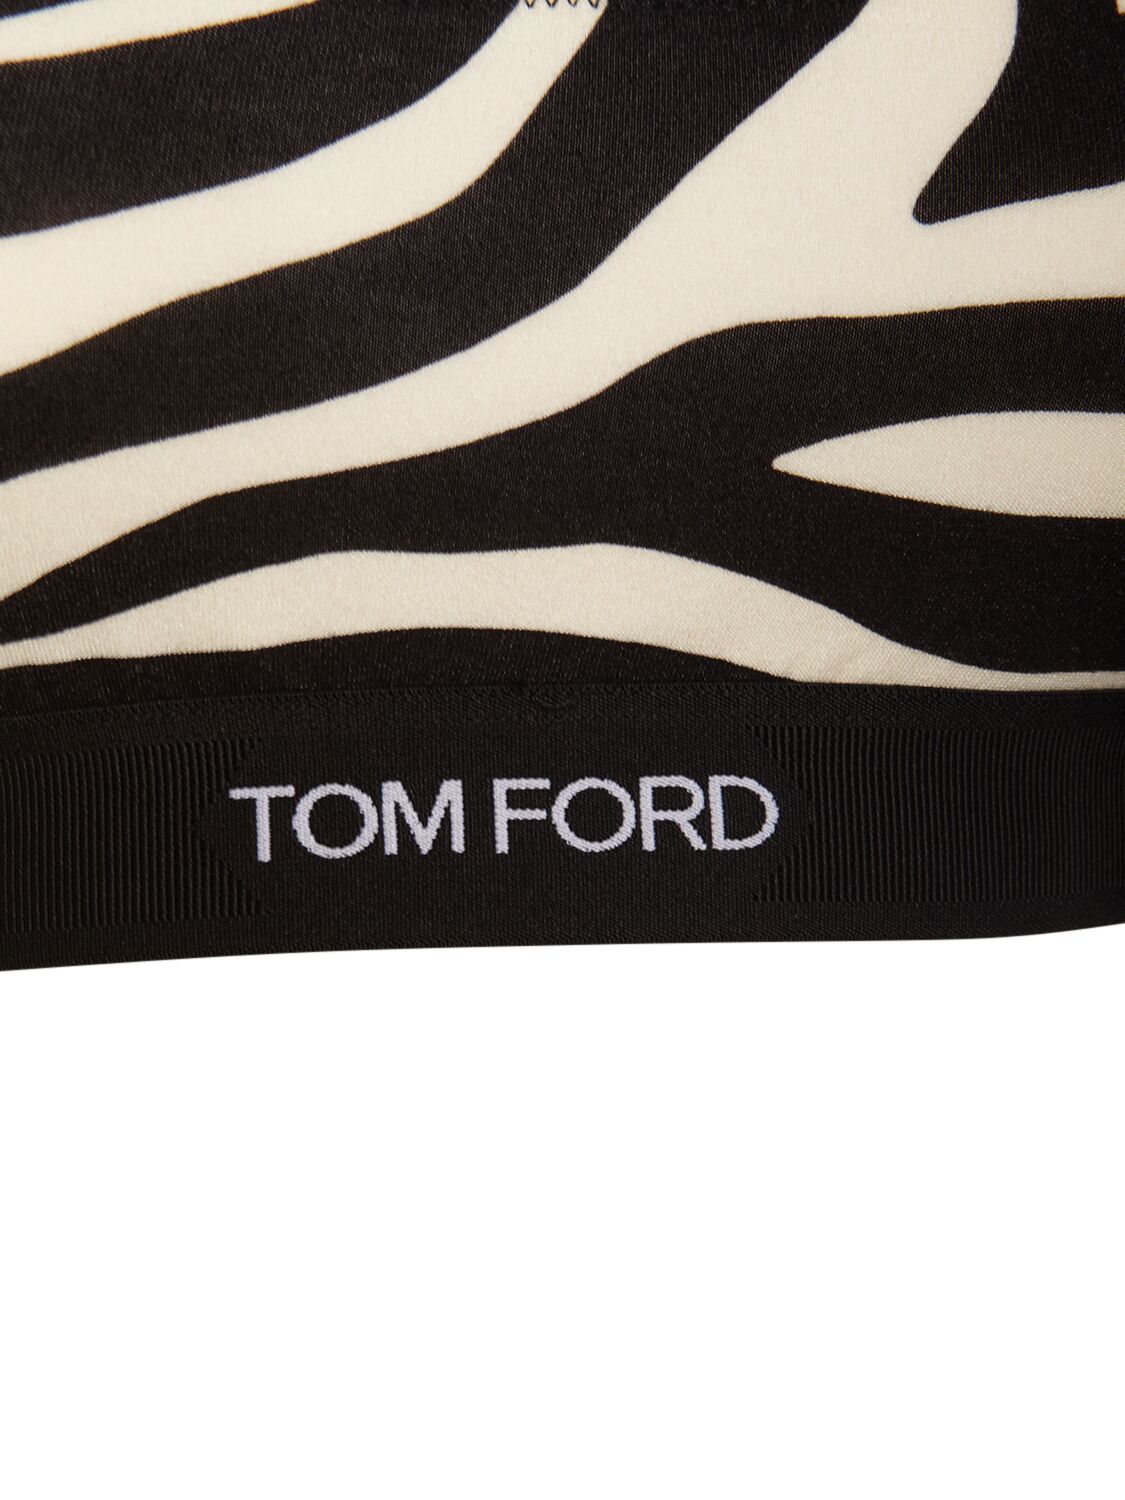 TOM FORD Zebra Printed Signature Bralette in Ecru & Black